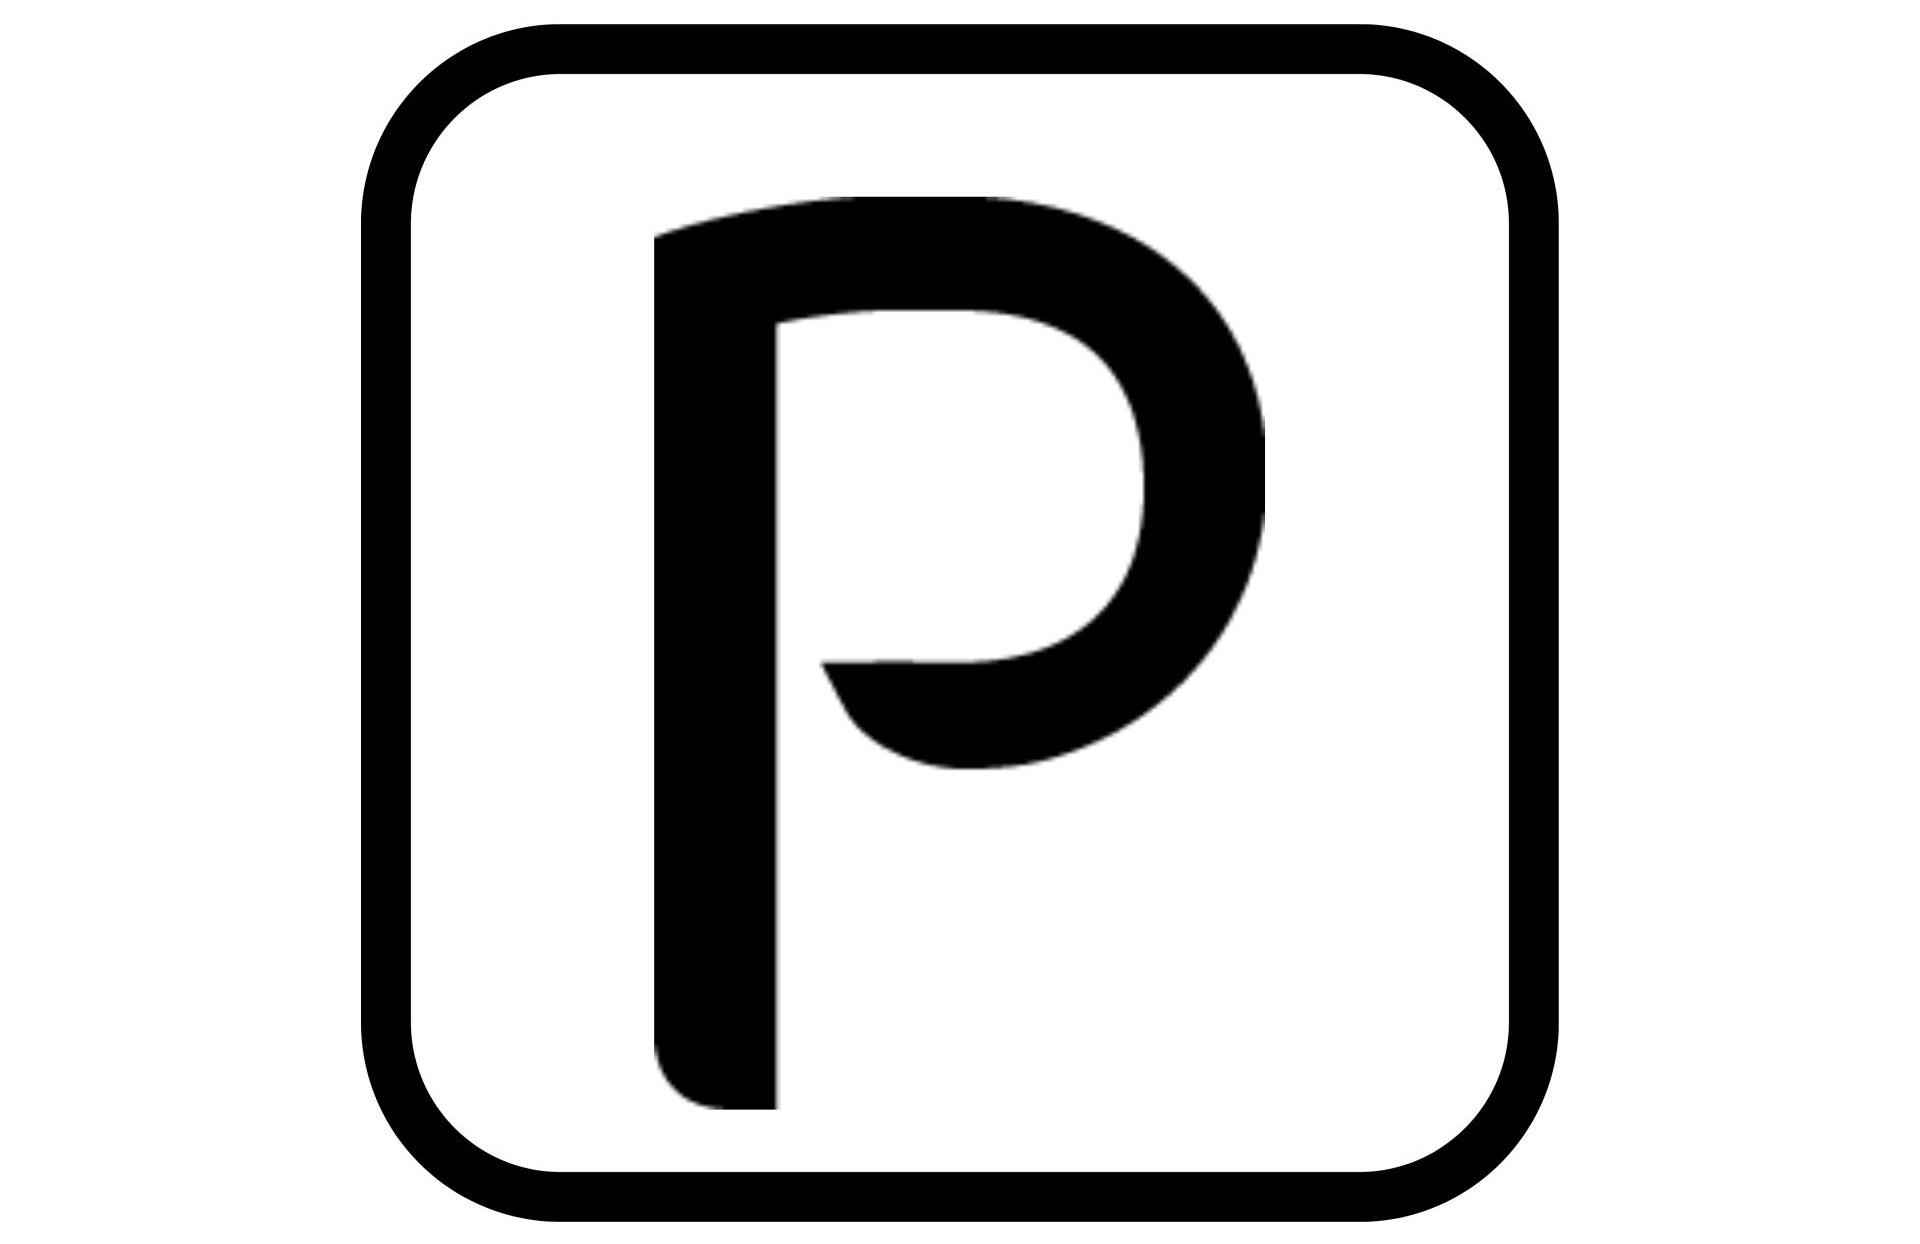 Parking gratuit